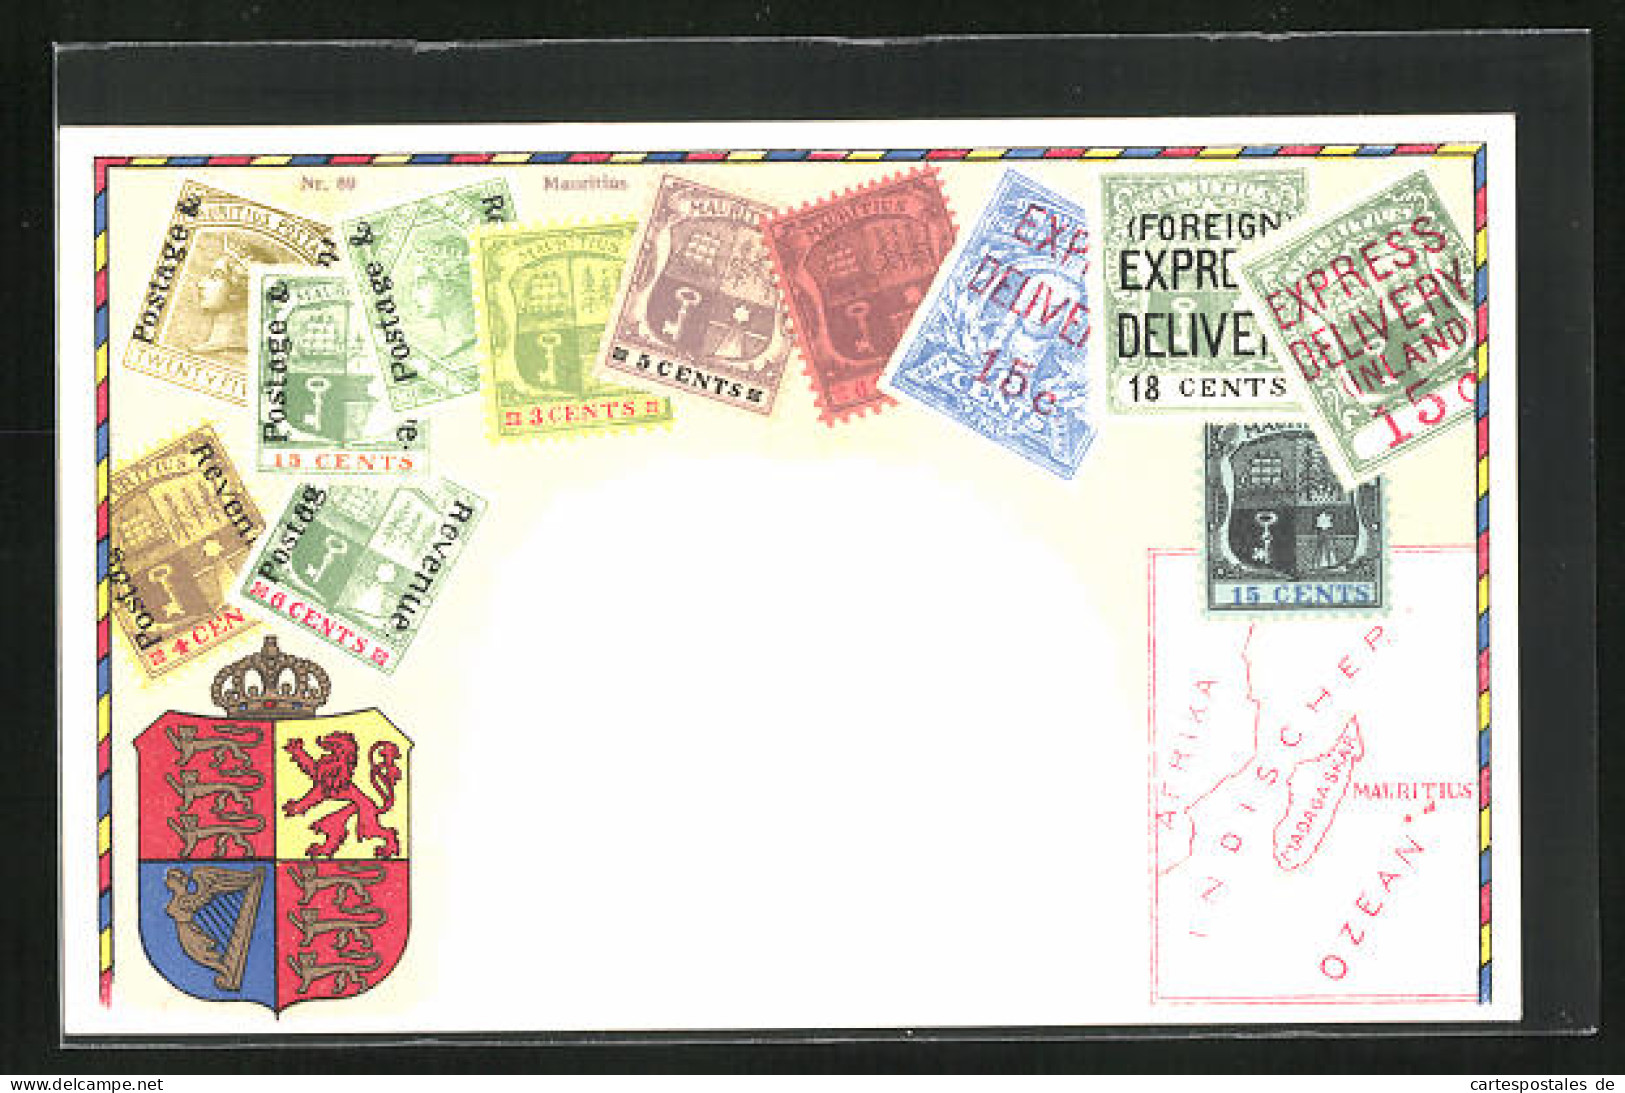 Lithographie Briefmarken Von Mauritius Verschiedener Werte, Landkarte Der Inseln östlich Von Afrika, Wappen Mit Krone  - Briefmarken (Abbildungen)